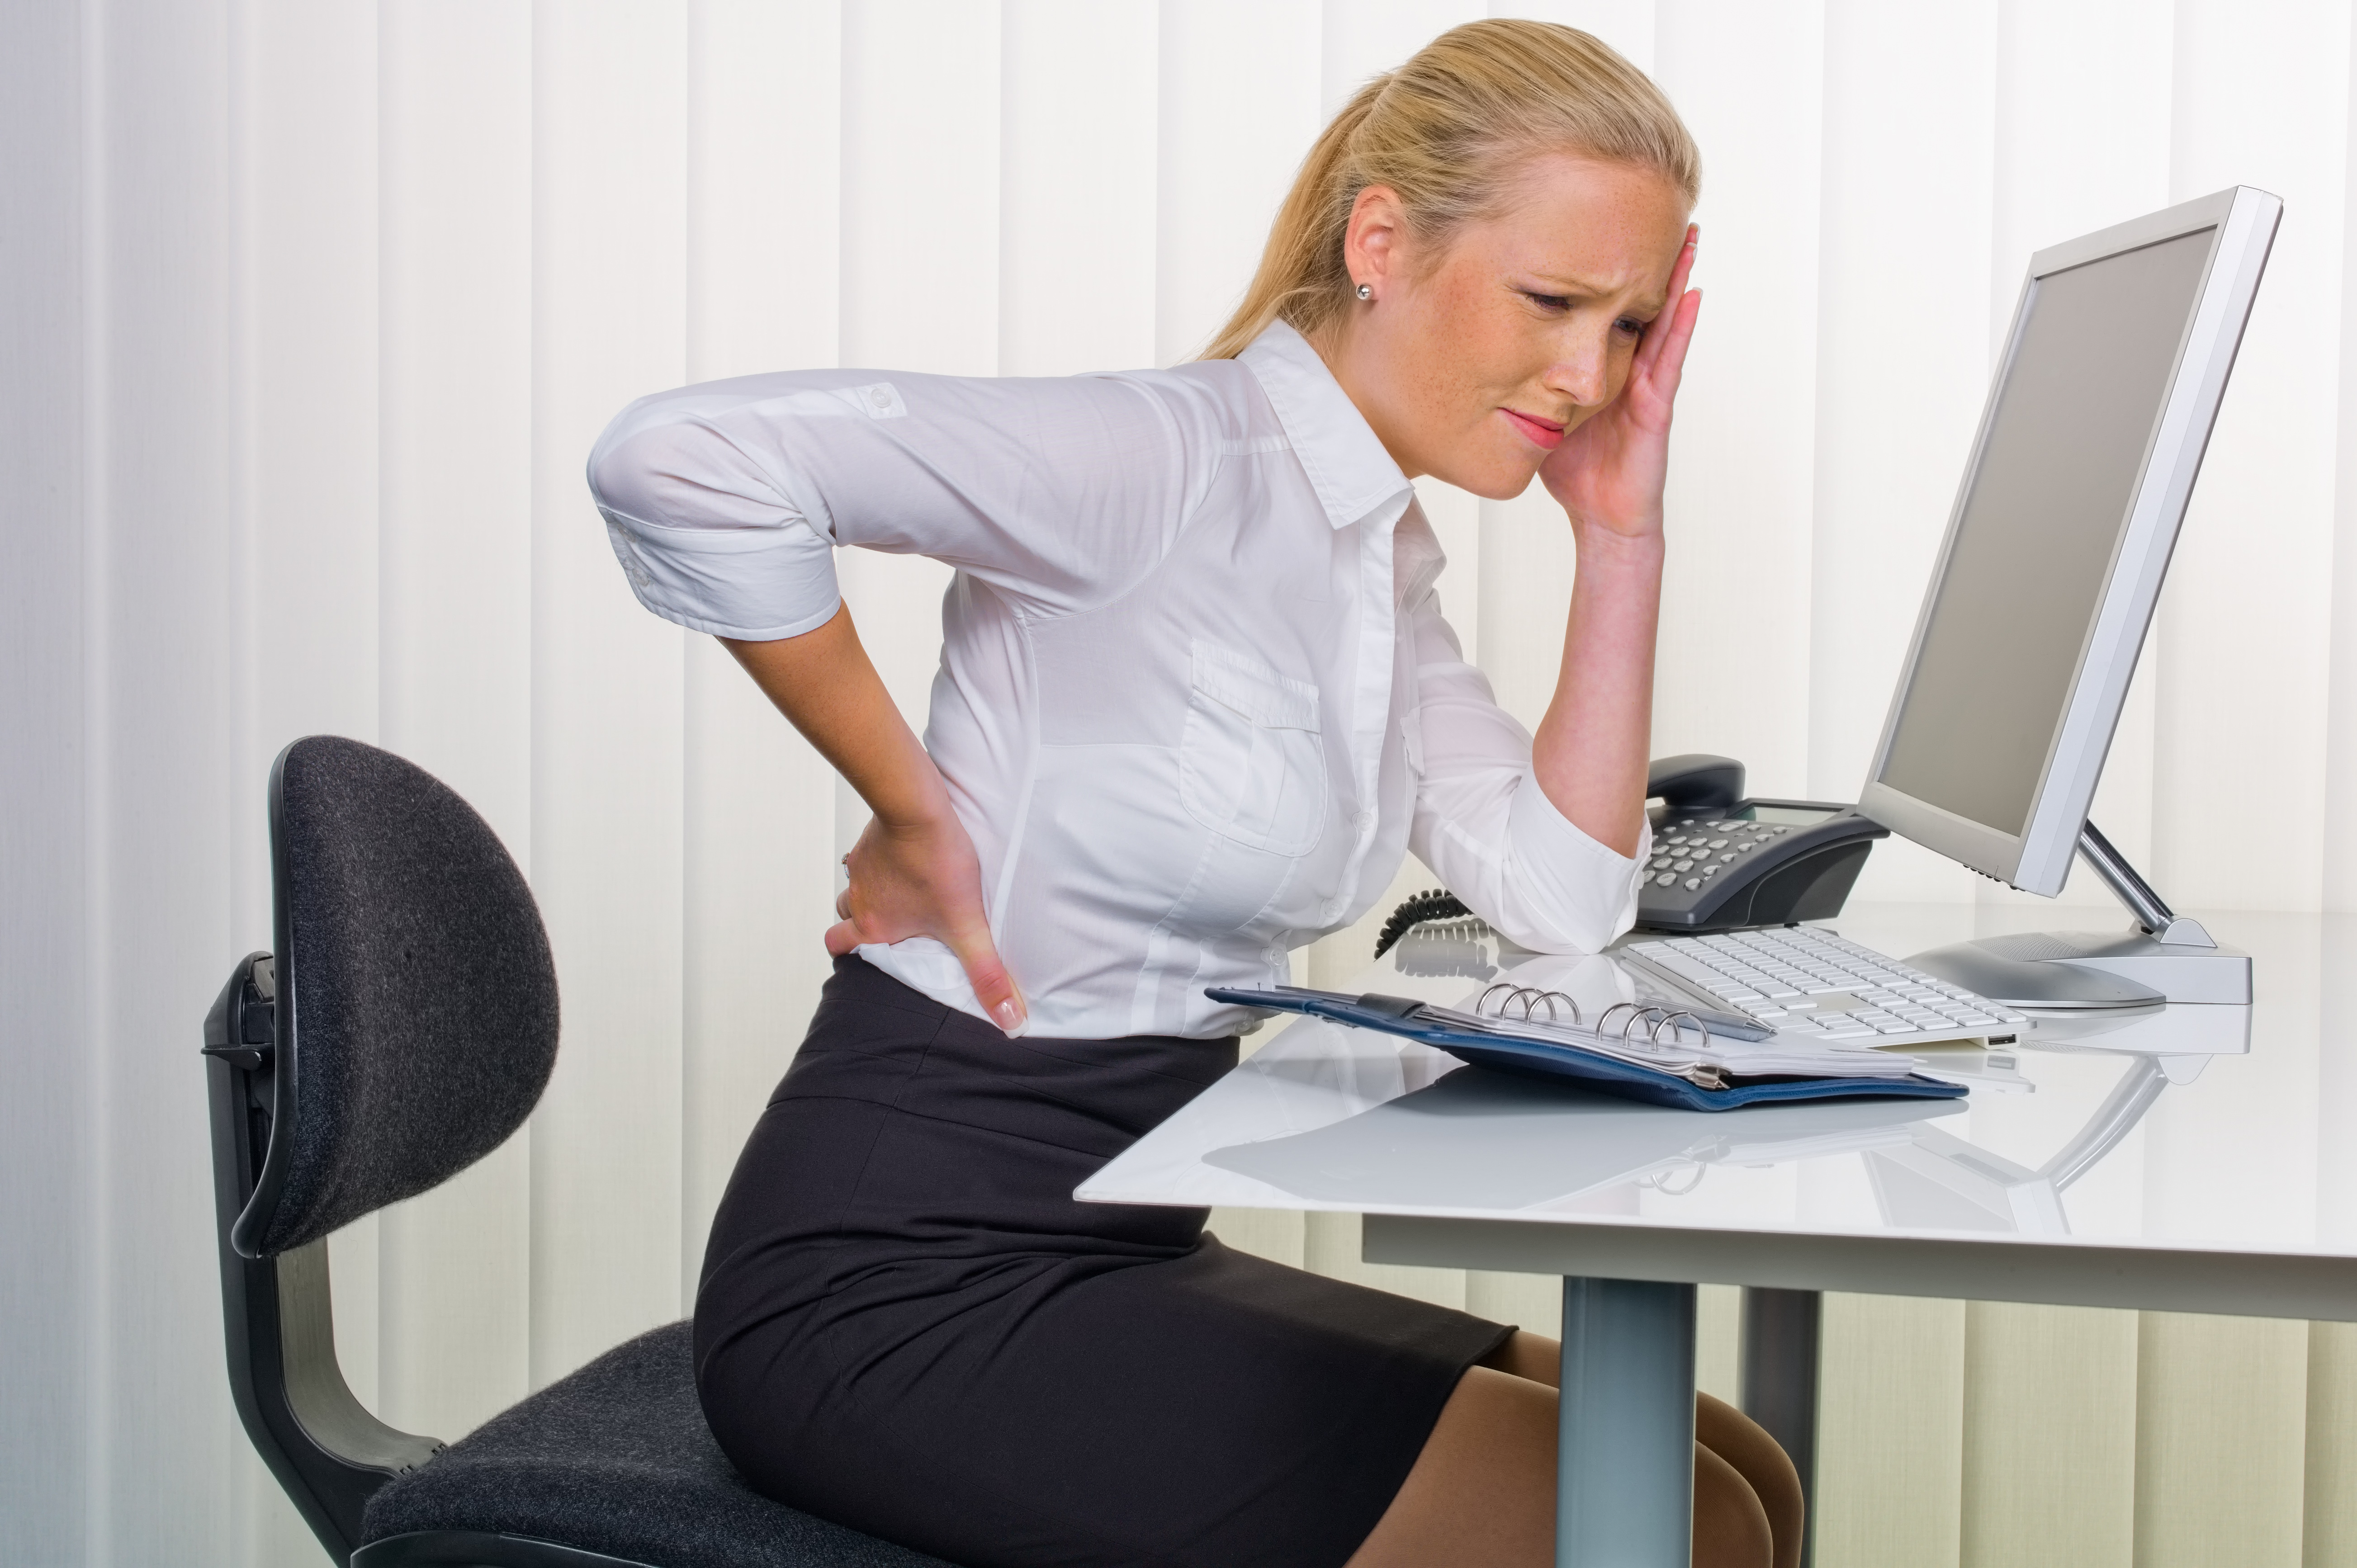 Может ли от сидячей работы болеть живот: Офисные боли. Как защитить спину при сидячей работе? | Здоровая жизнь | Здоровье